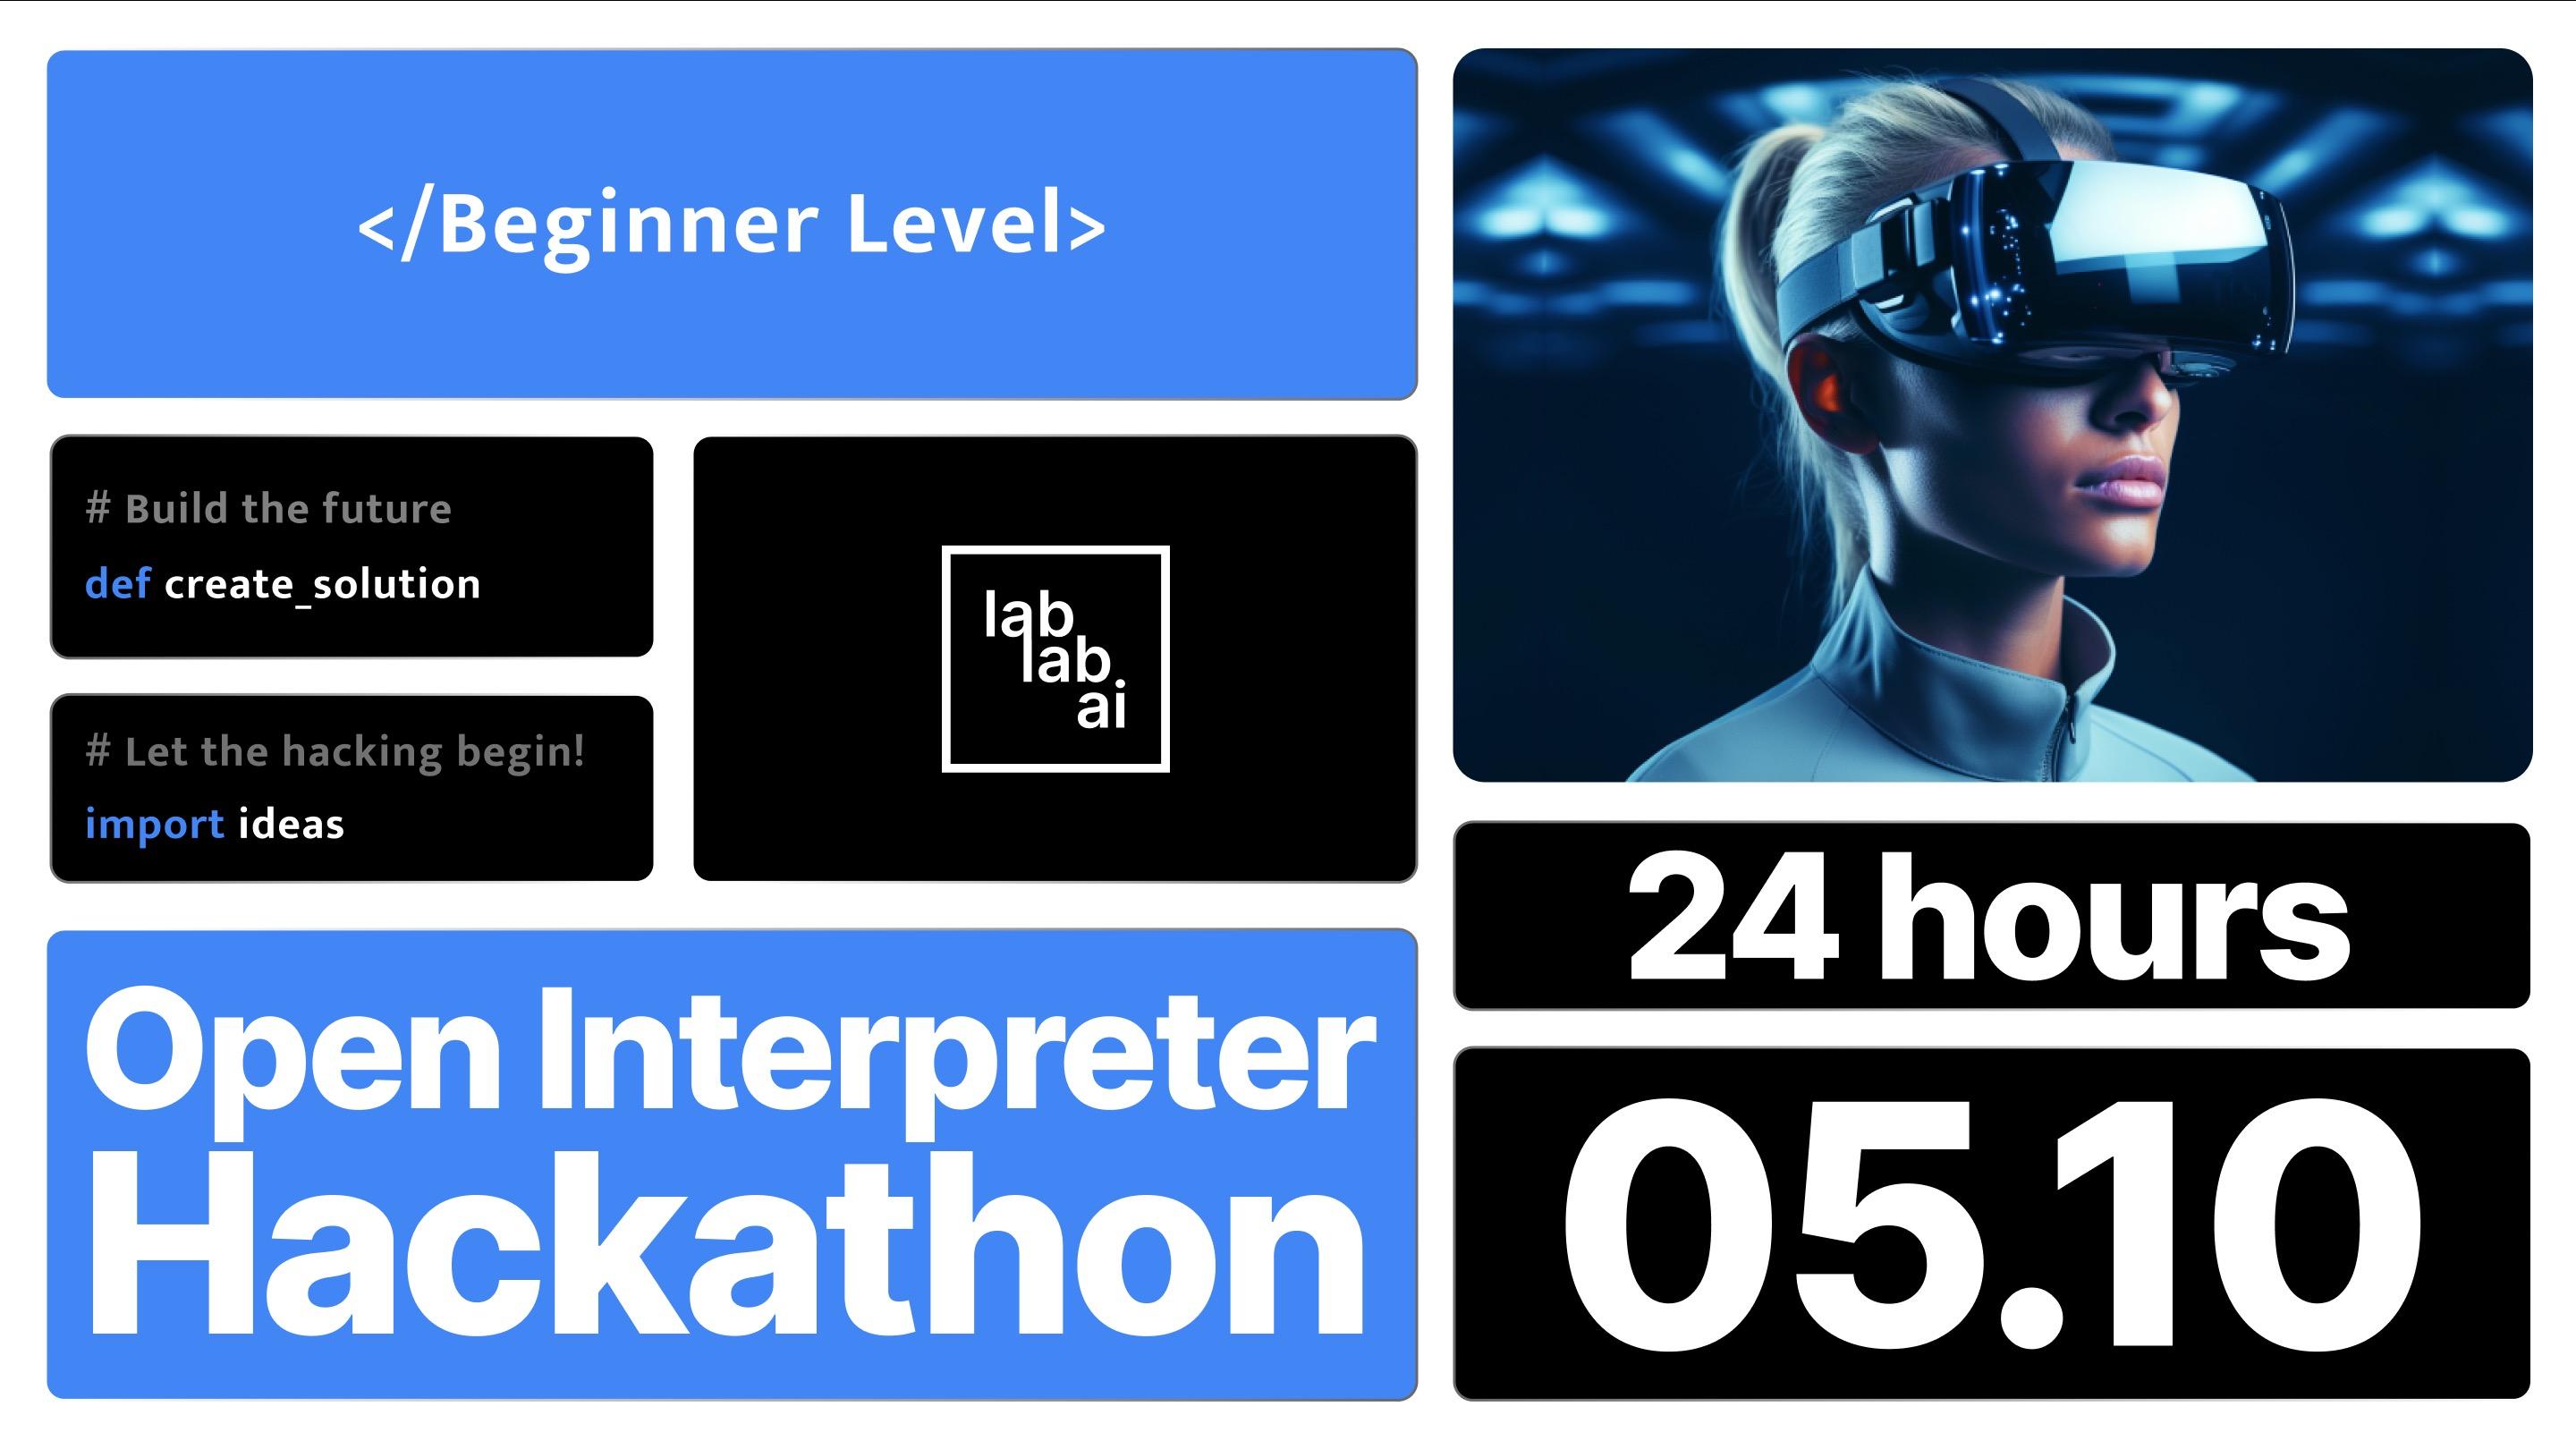 Open Interpreter Hackathon